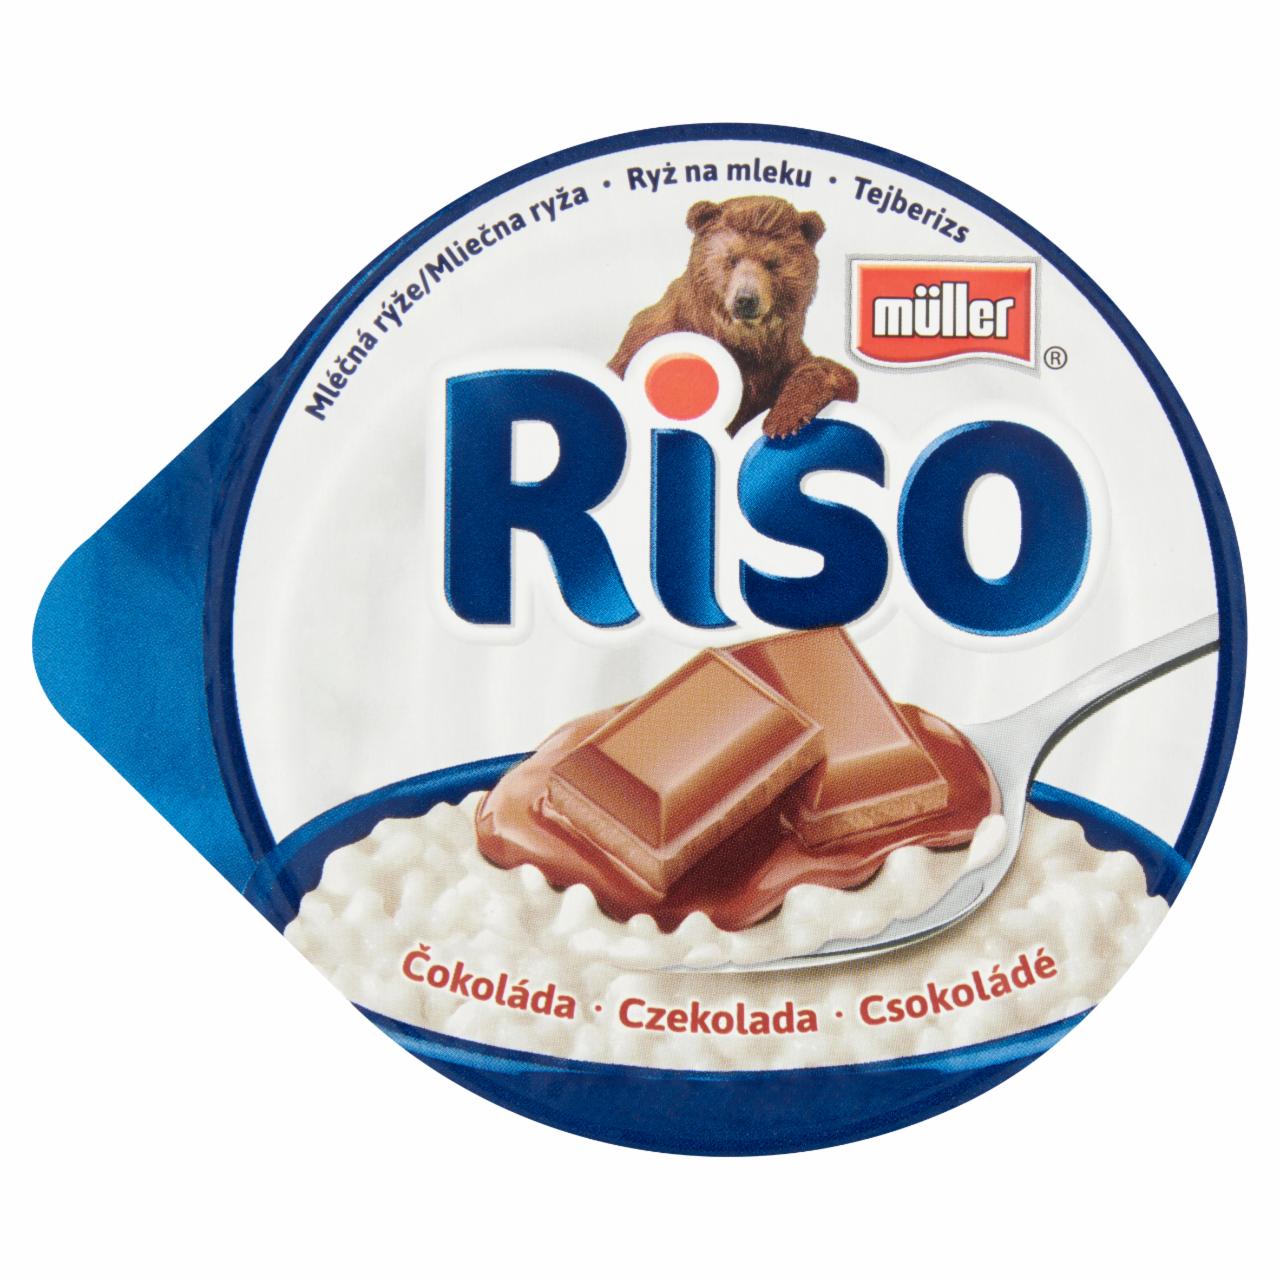 Képek - Müller Riso tejberizs desszert csokoládé ízű készítménnyel 200 g